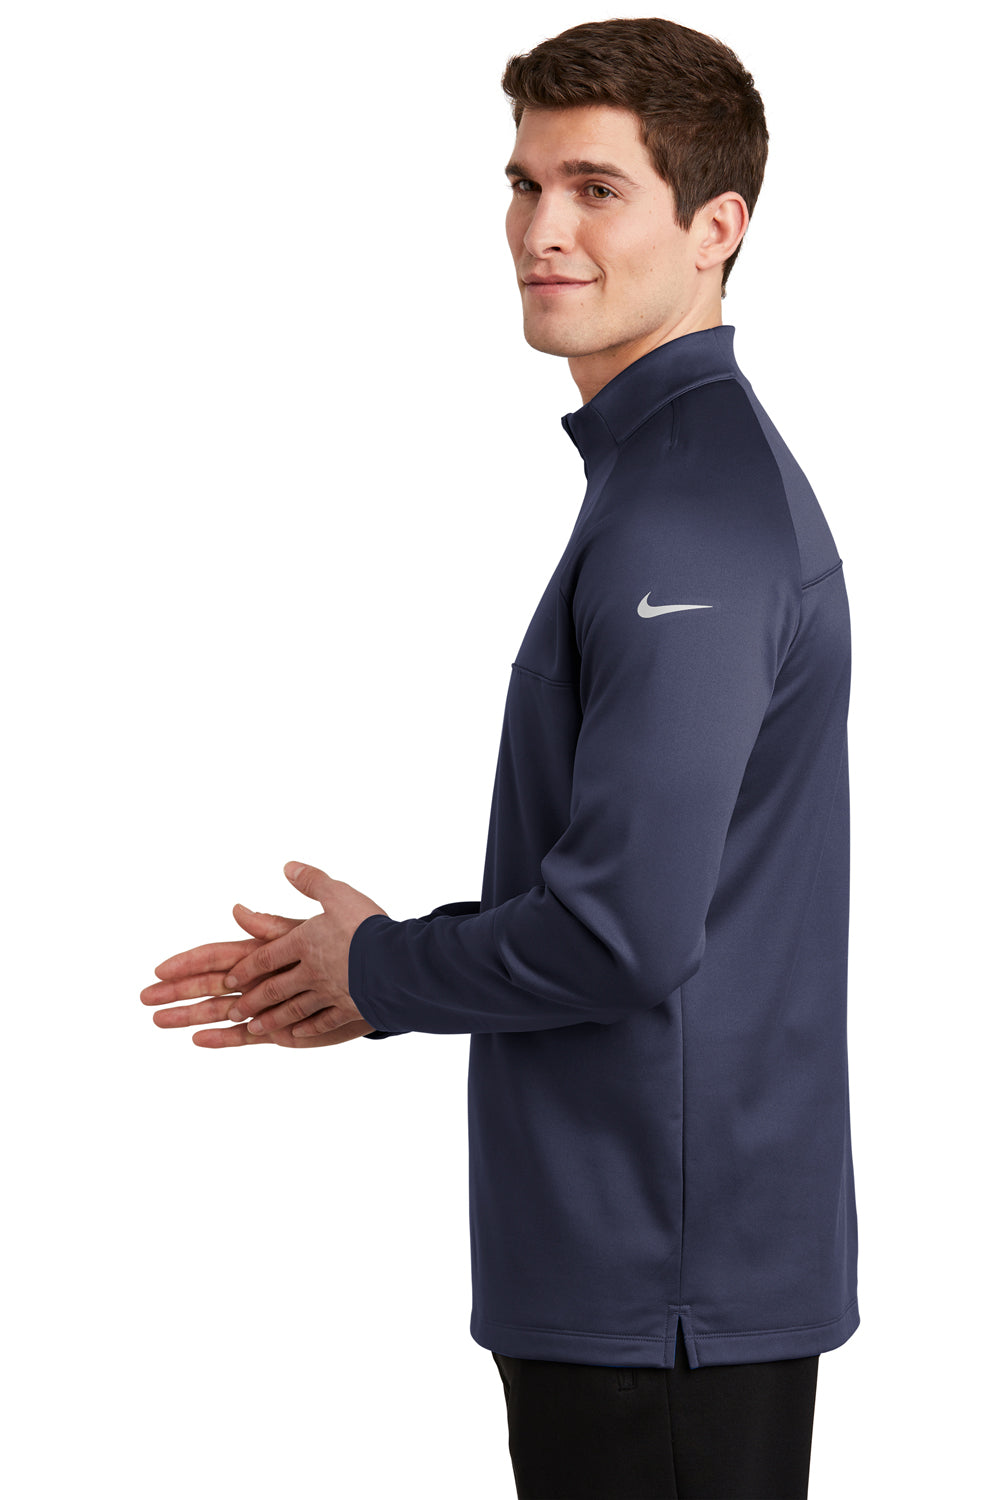 Nike NKAH6254 Mens Therma-Fit Moisture Wicking Fleece 1/4 Zip Sweatshirt Midnight Navy Blue Model Side